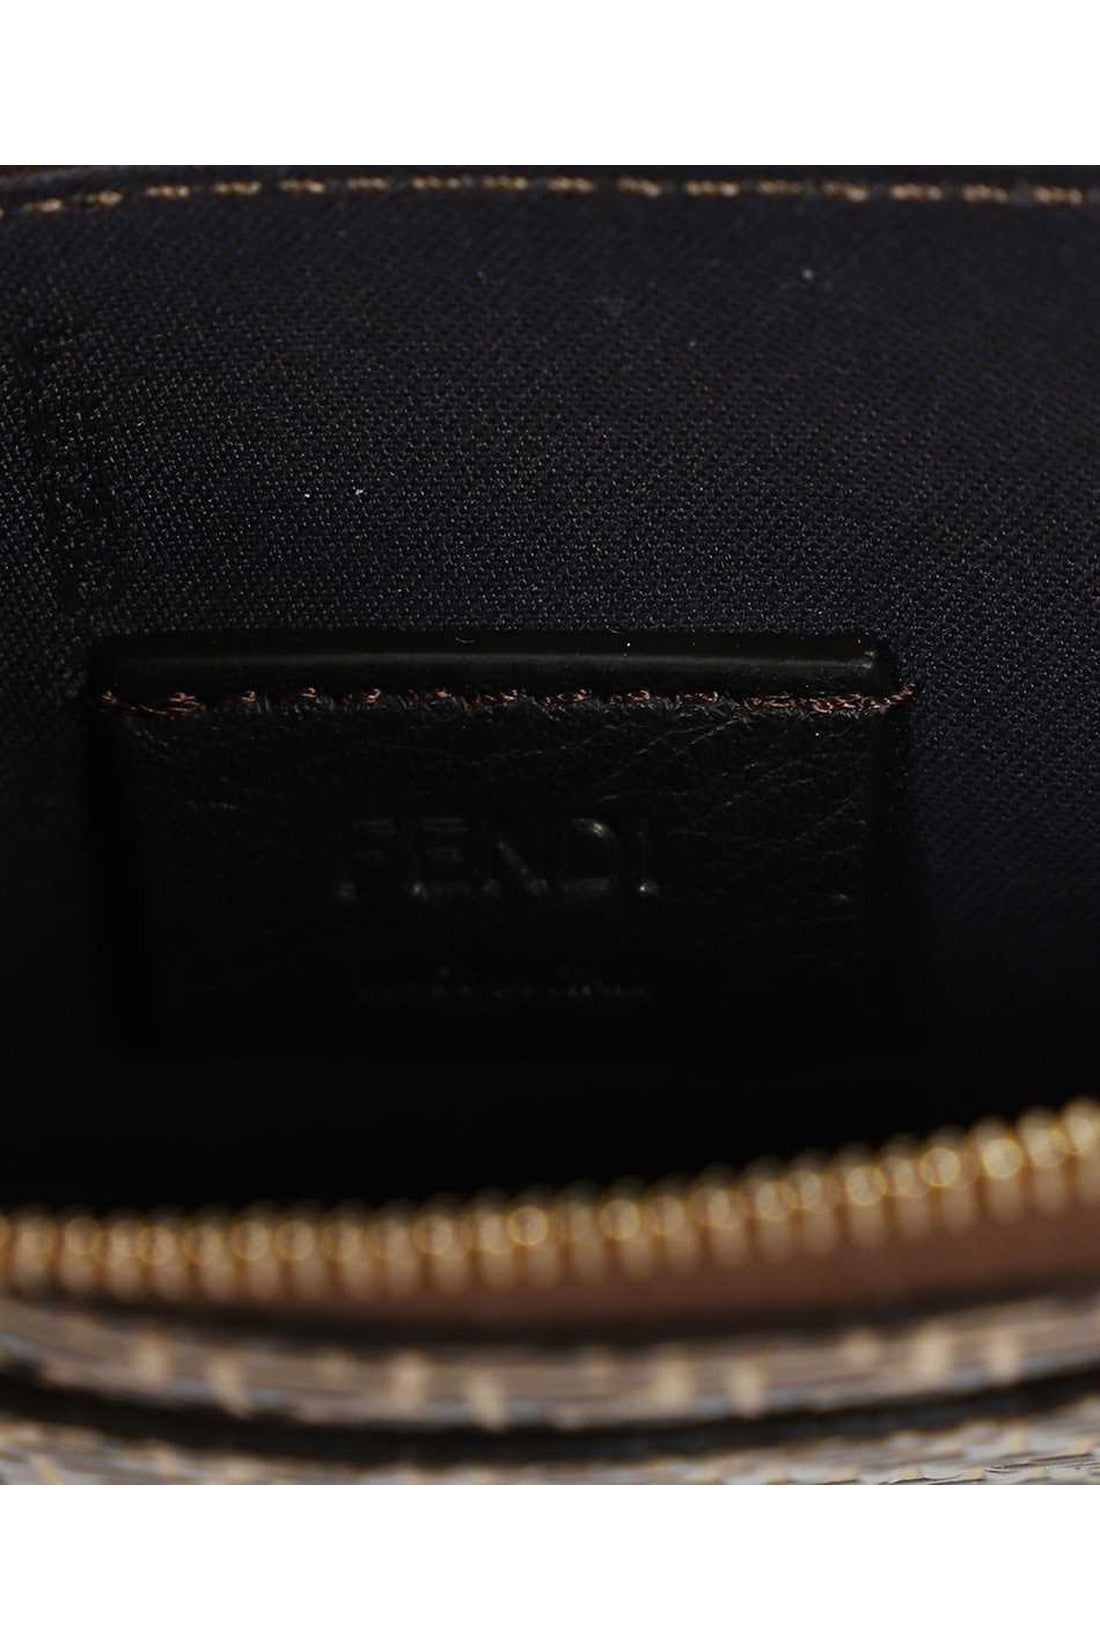 Fendi-OUTLET-SALE-Logo detail leather card holder-ARCHIVIST